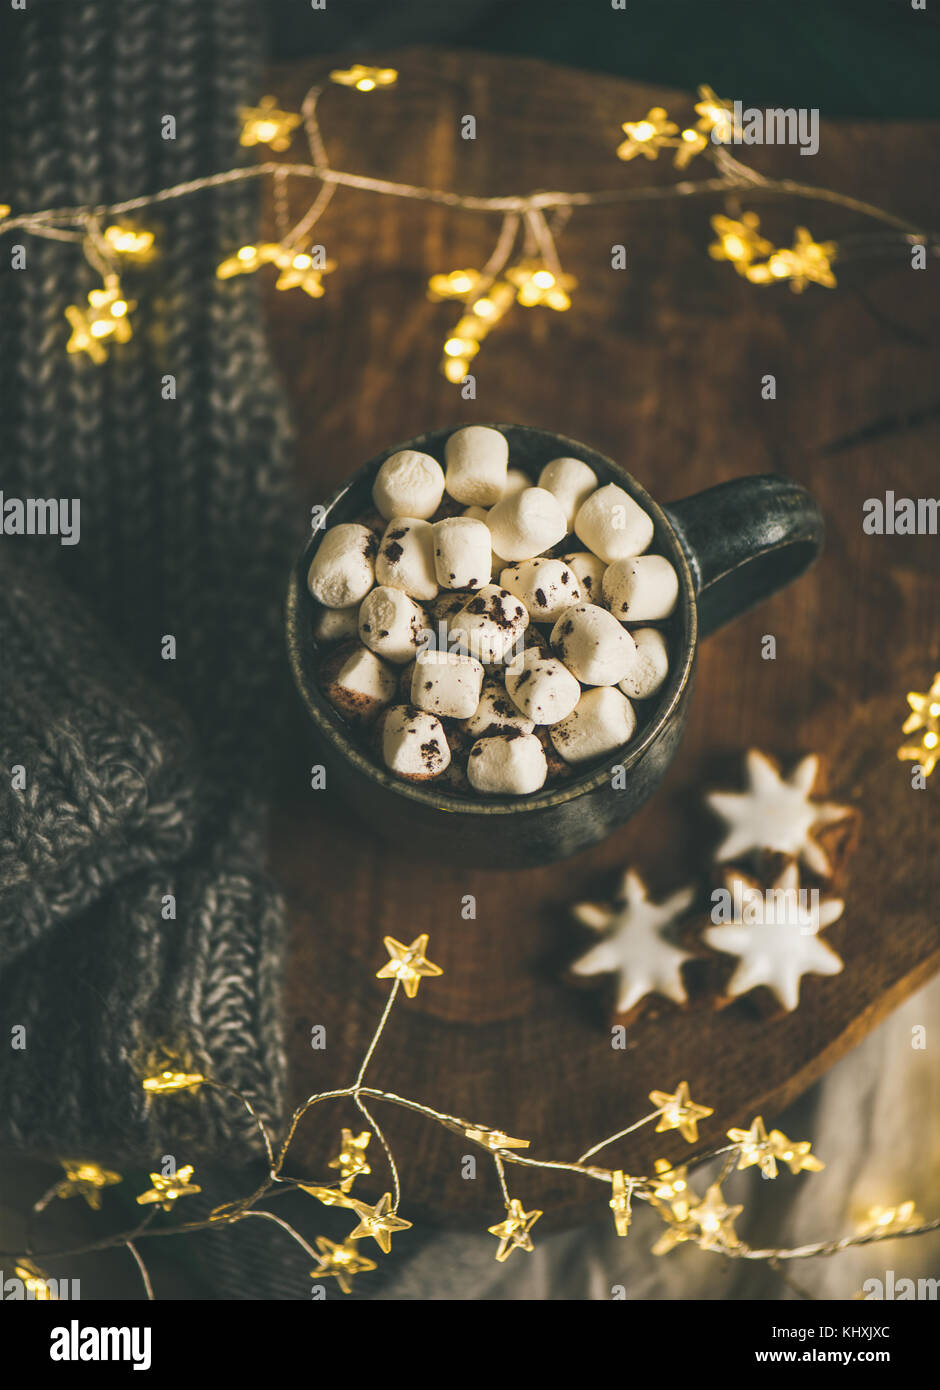 Invierno navidad chocolate caliente servido con luz Garland, vista superior Foto de stock